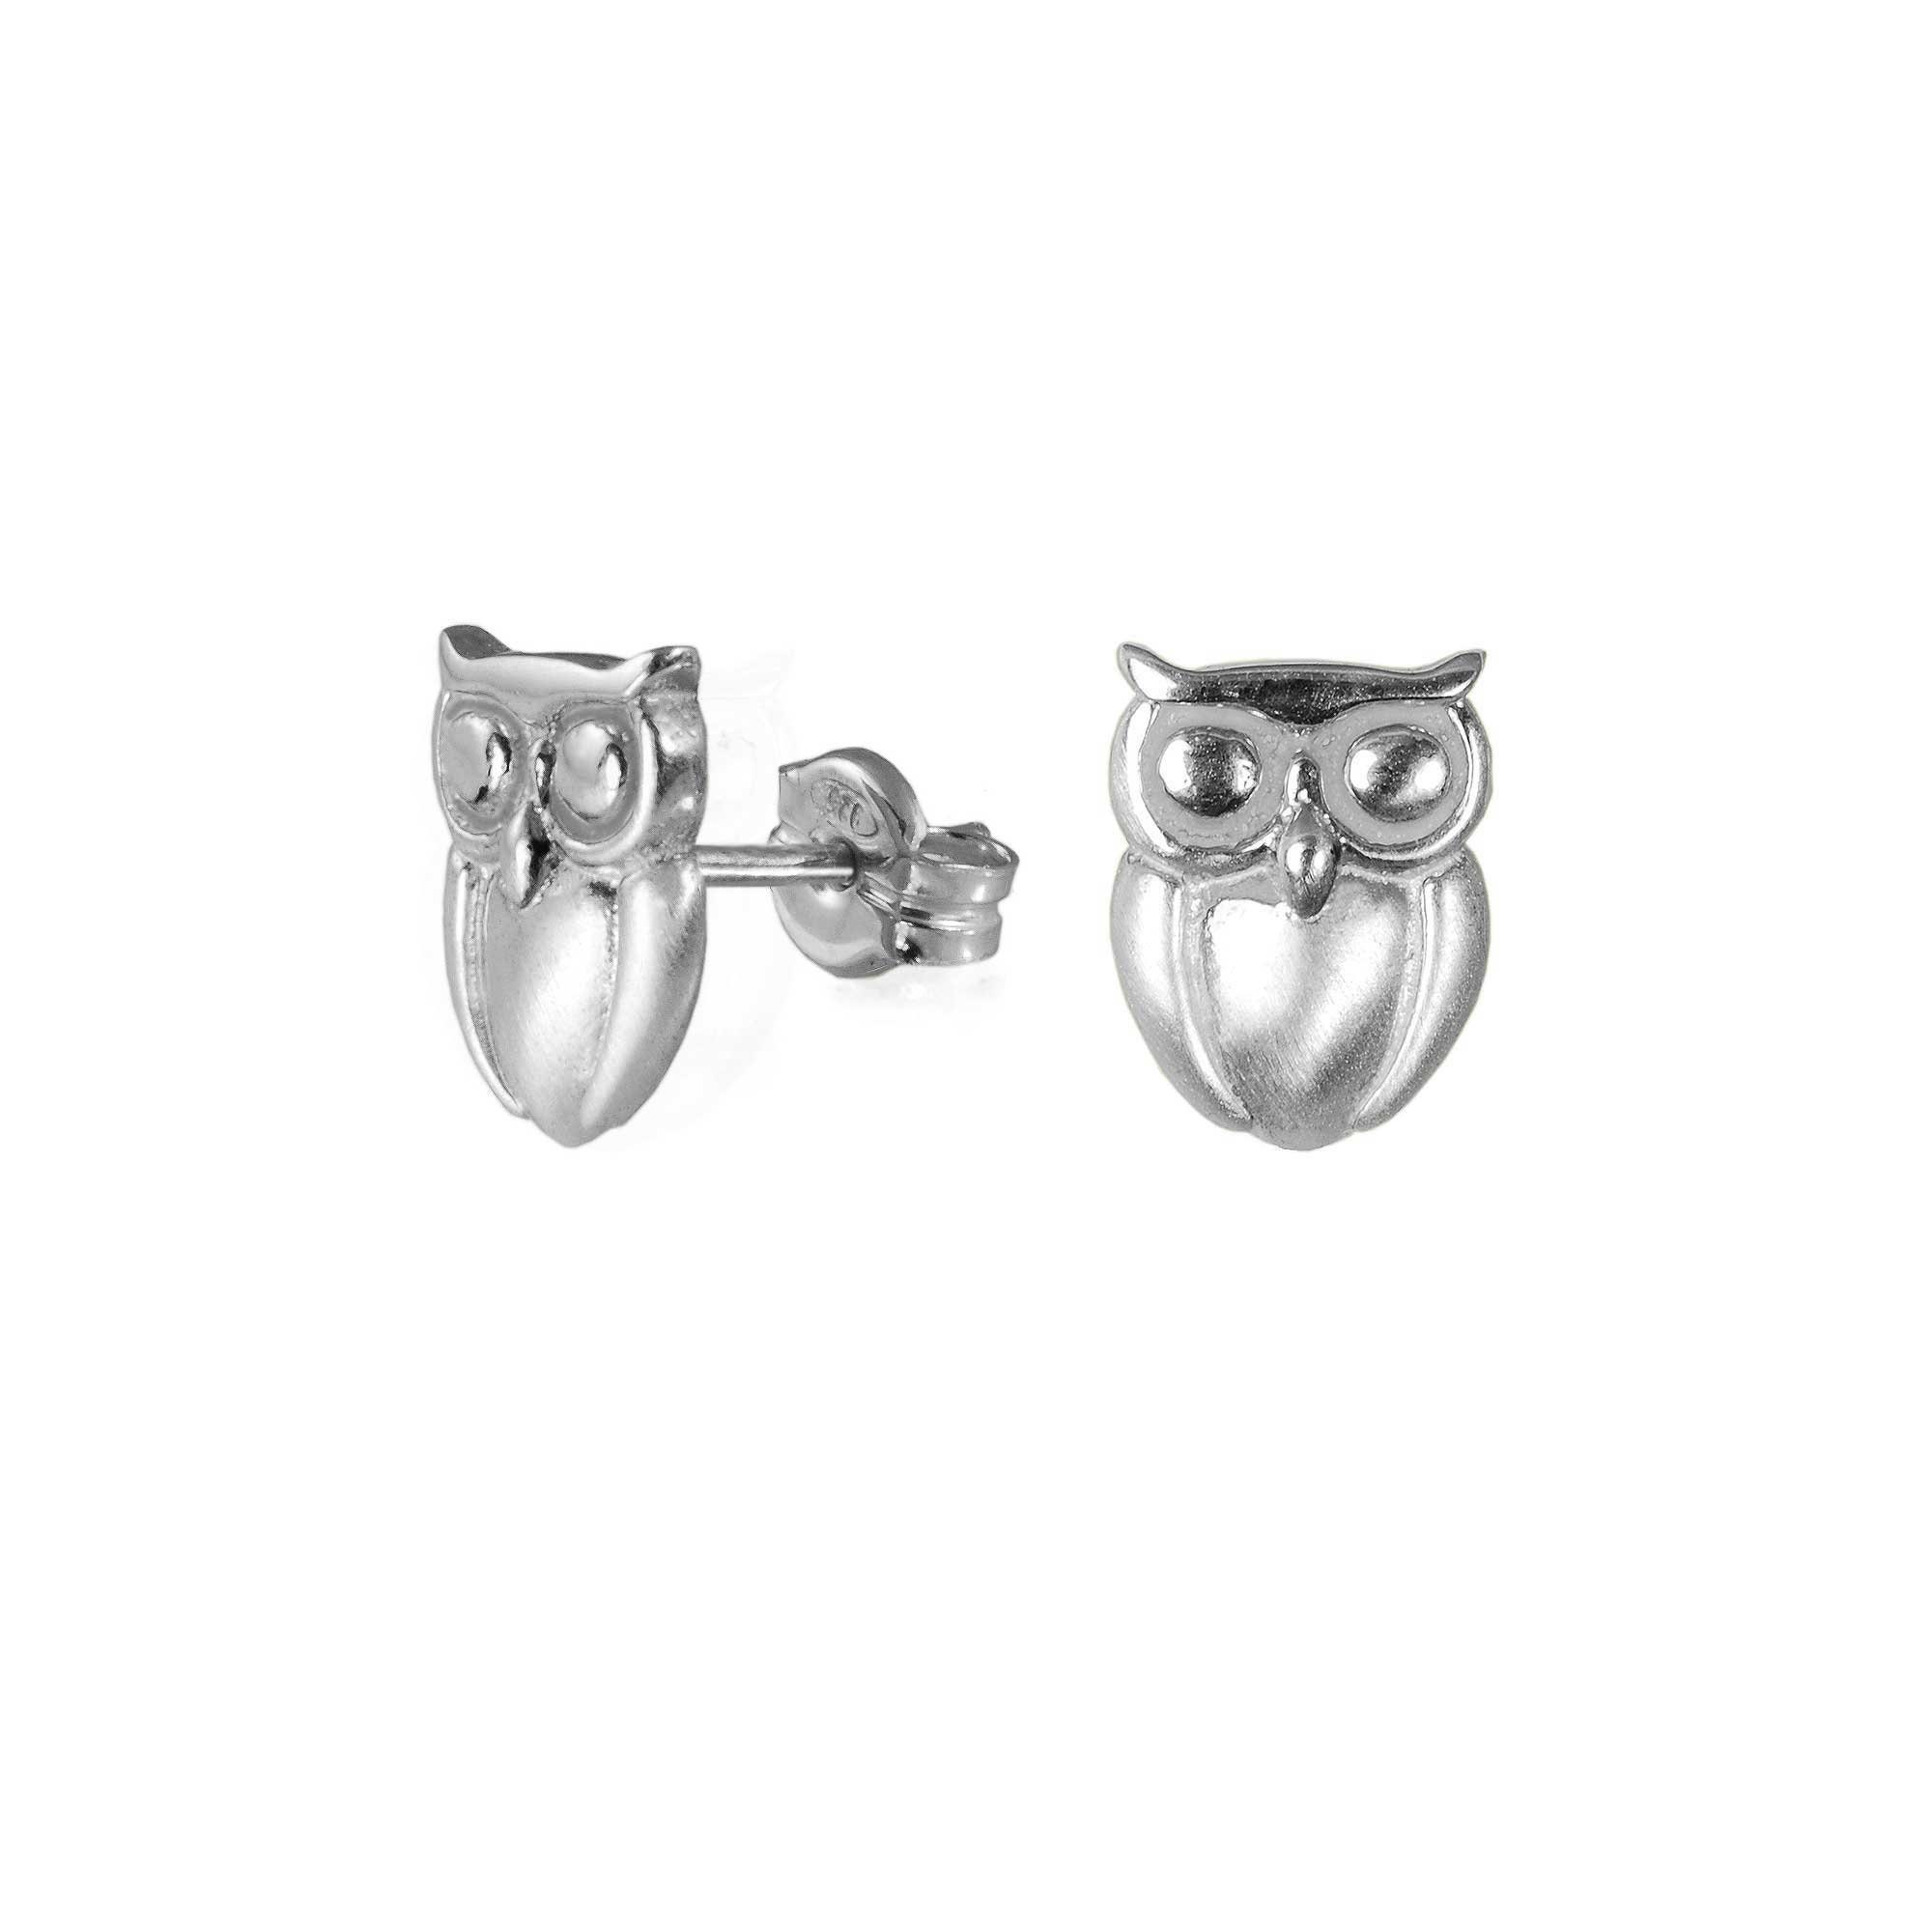 Owl Earrings Sterling Silver Owl Stud Earrings Jewelry Gift | Etsy